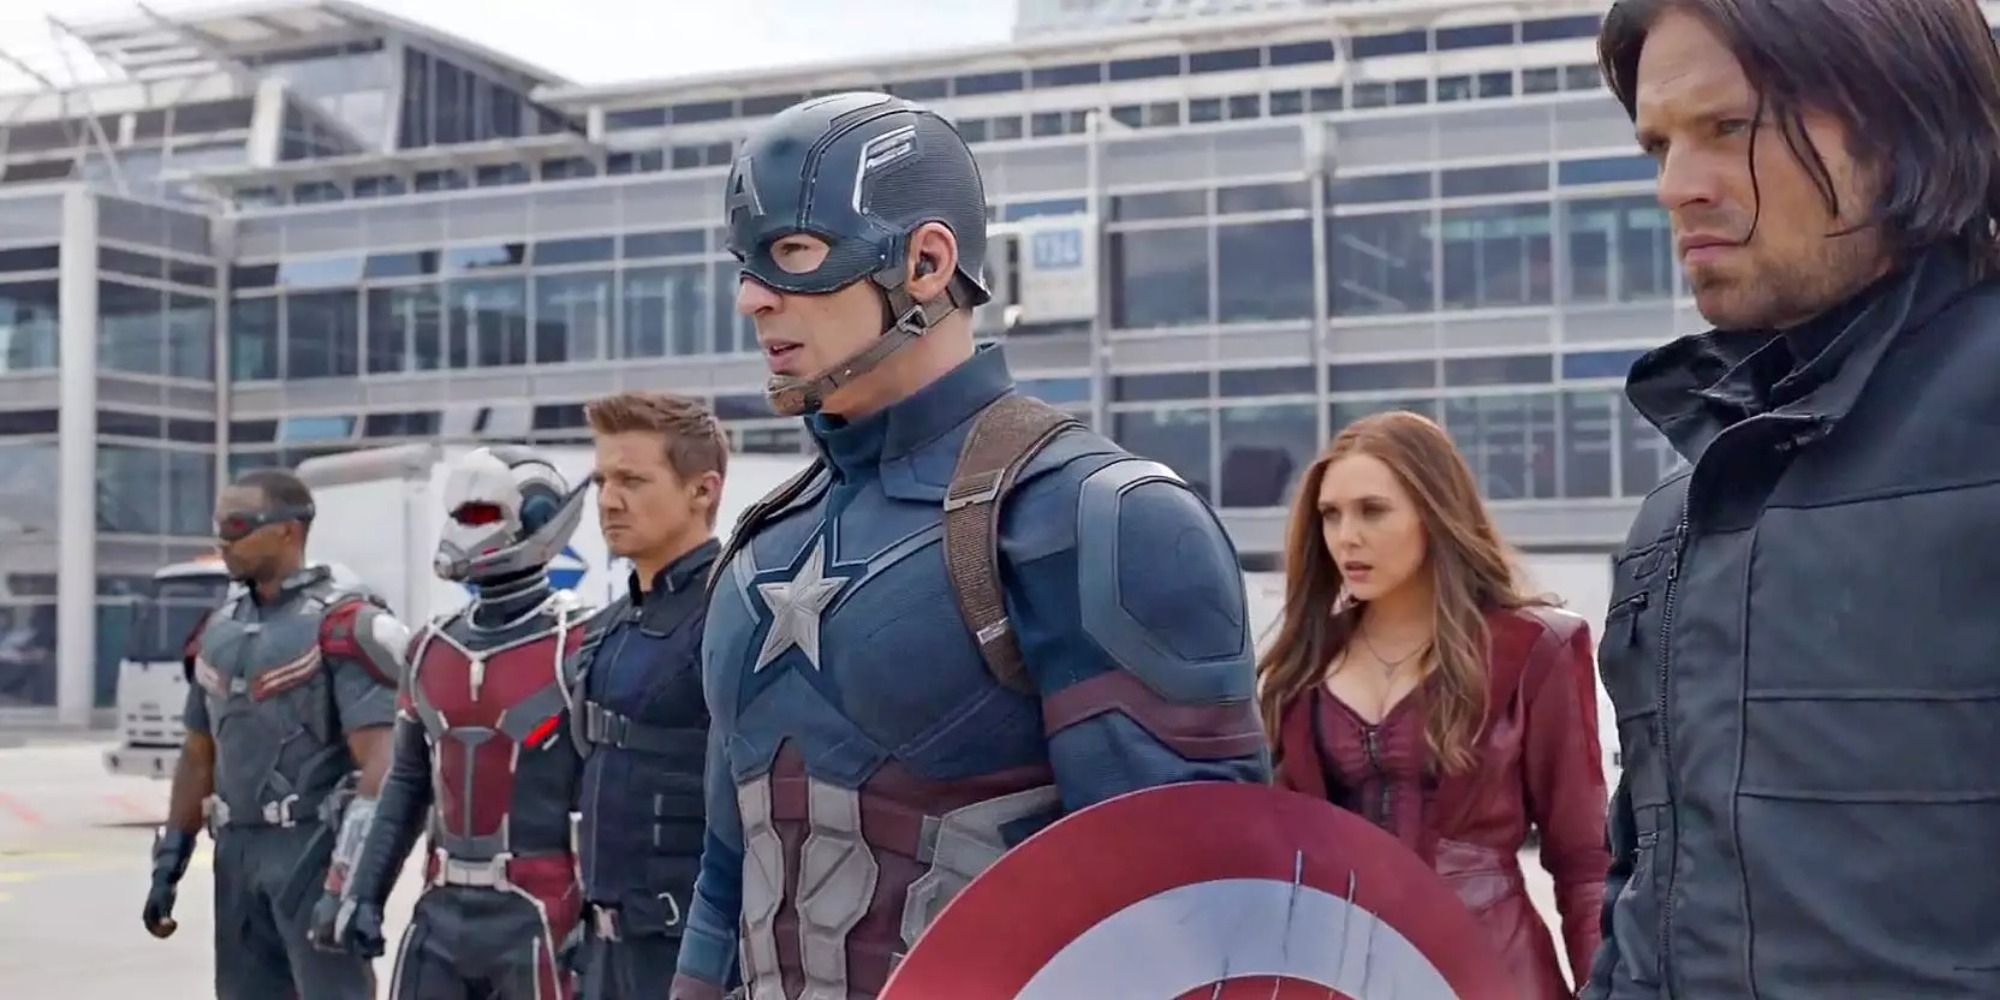 L'équipe Captain America sur le point de combattre l'équipe Iron Man à l'aéroport.